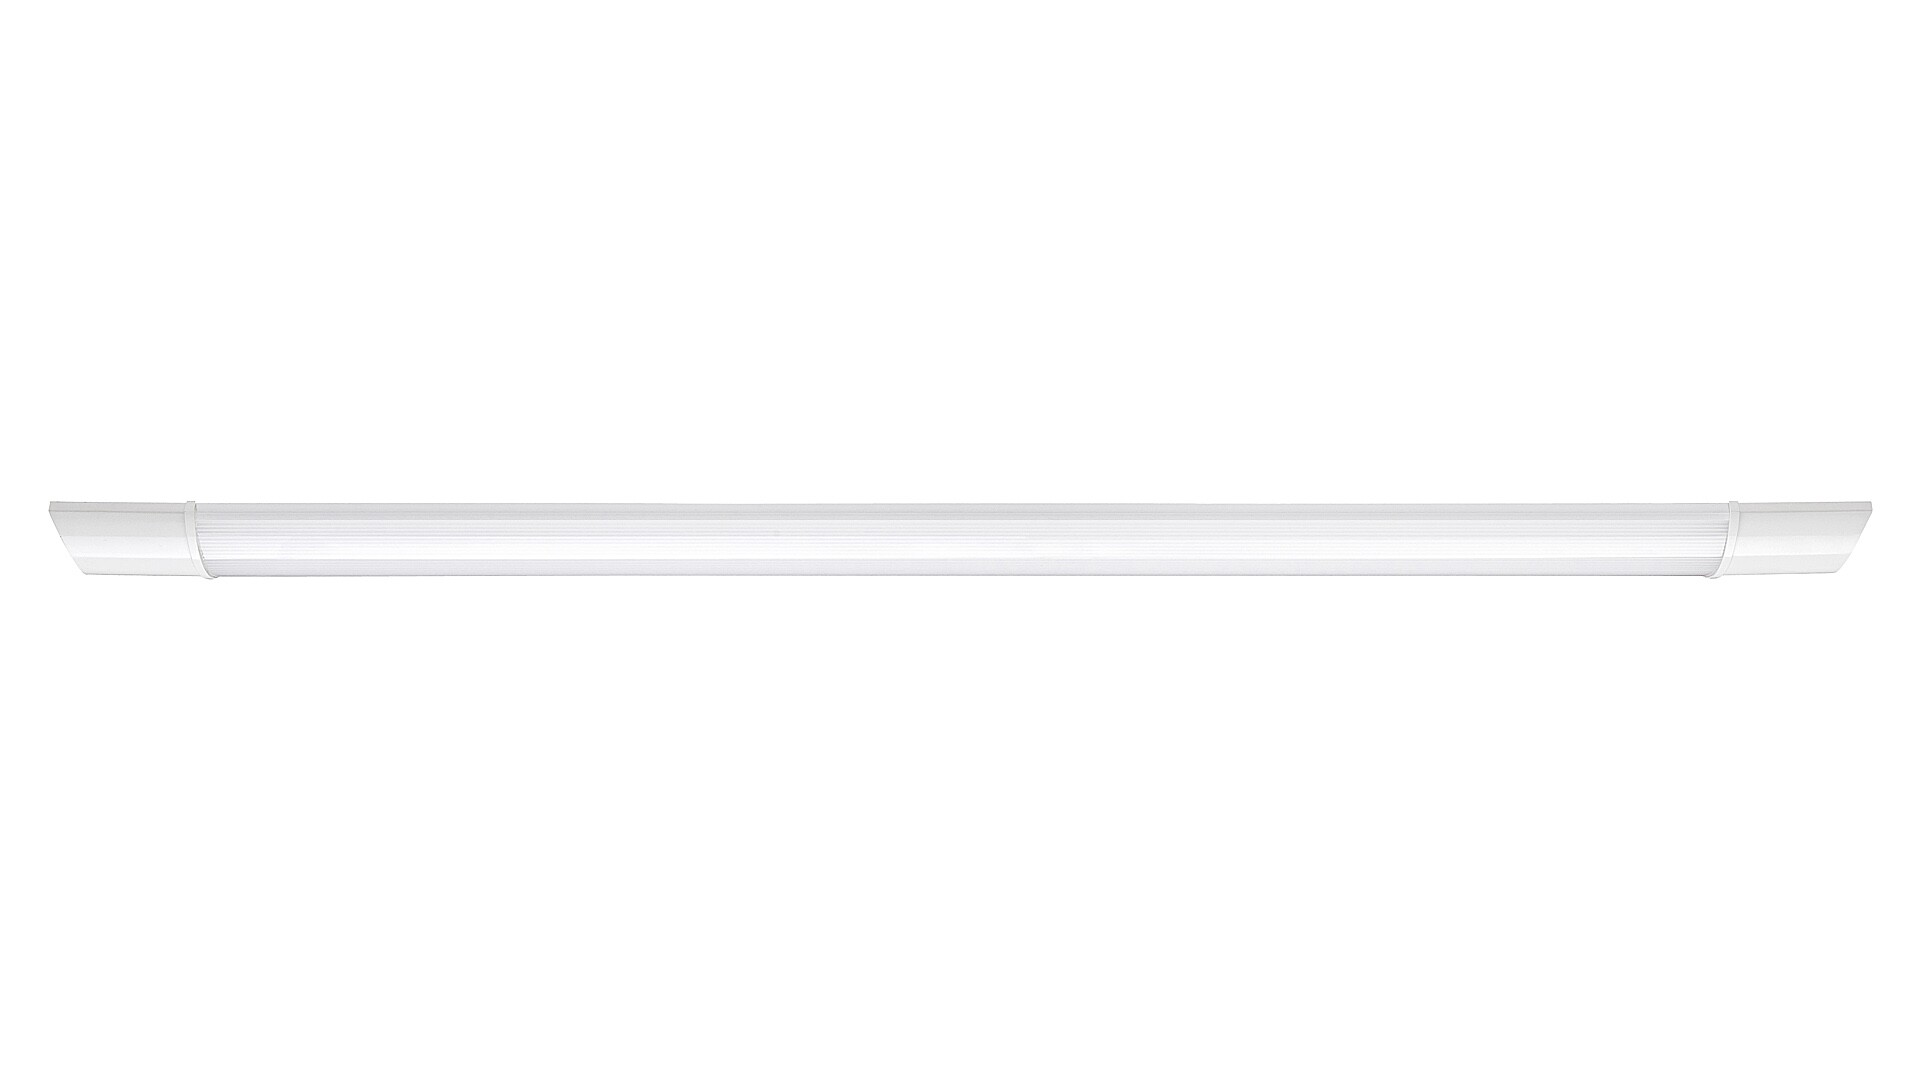 Arbeitsleuchte Batten Light 1452, 30W, 4000K, 2400lm, Kunststoff, weiß, neutralweiß, 90cm